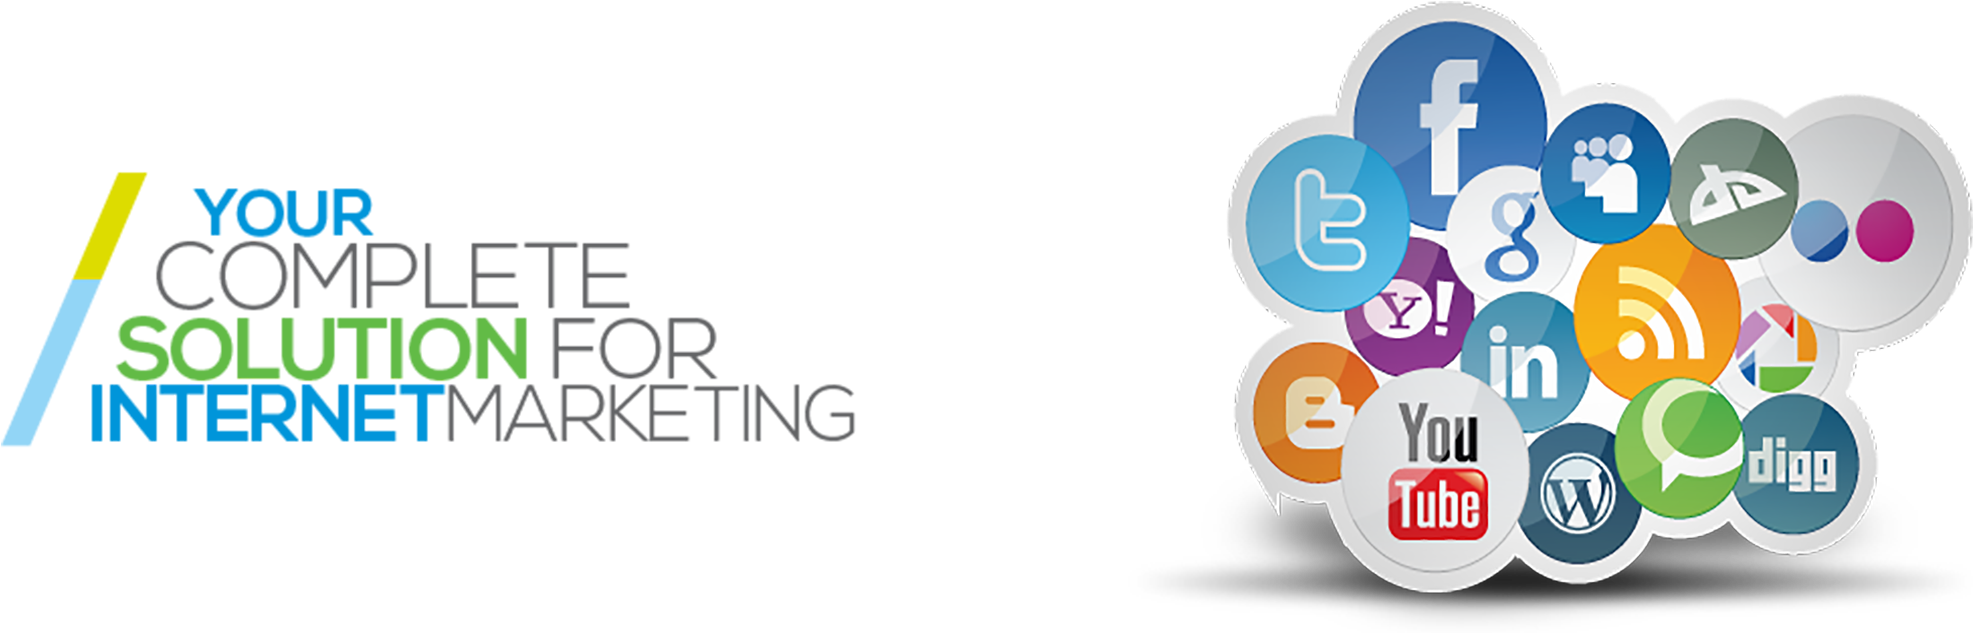 Social Media Marketing Services - Digital Media Marketing Banner (1980x636)